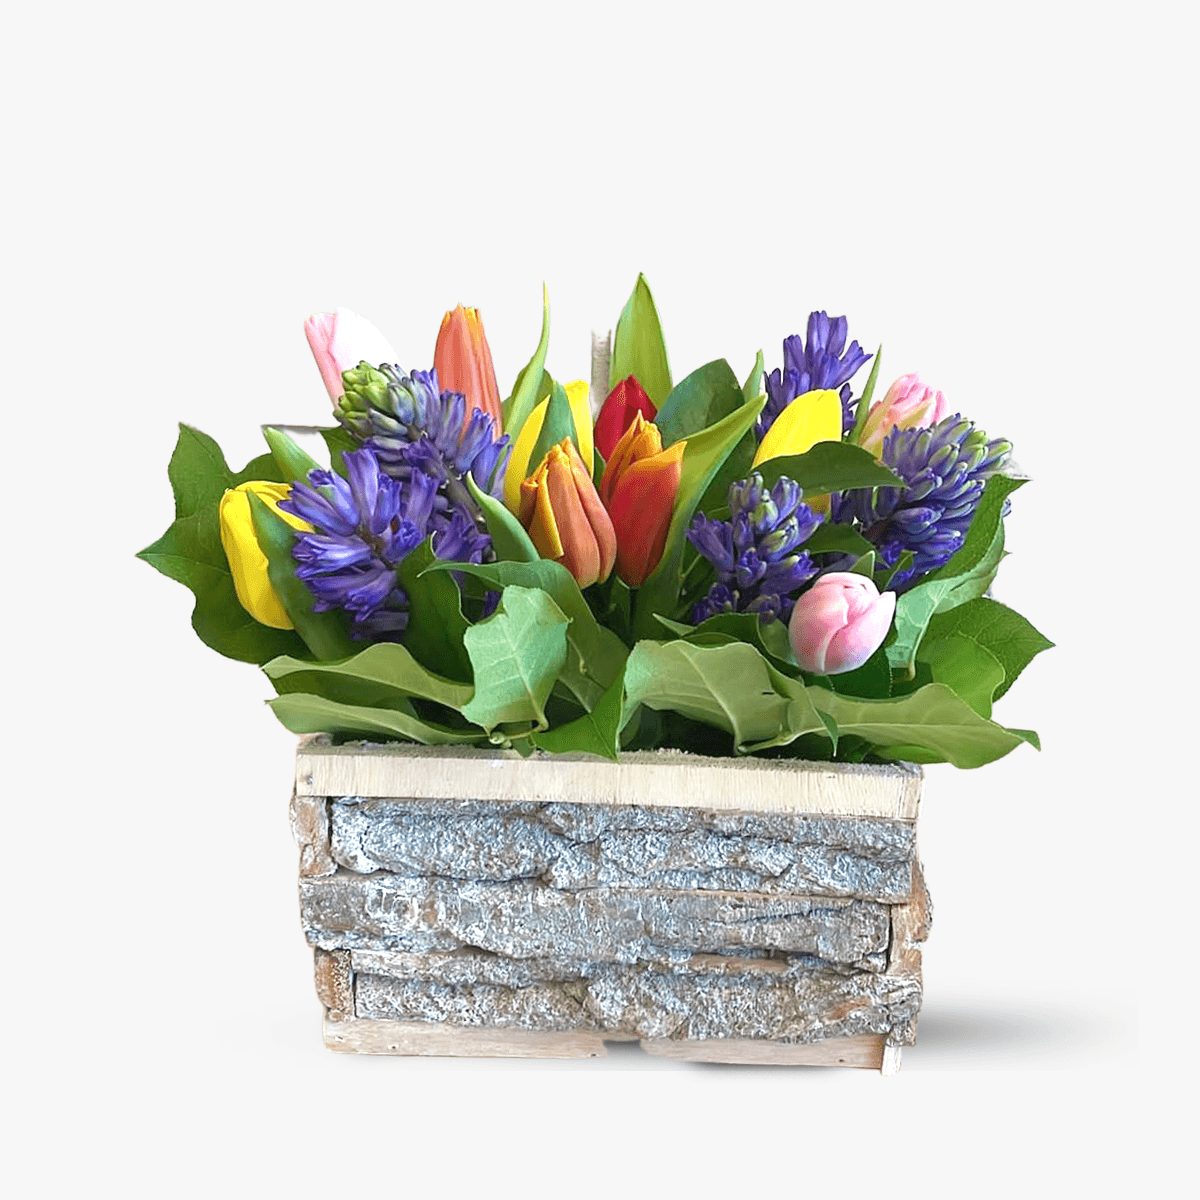 Aranjament floral – Bucuria lalelelor – Standard Aranjament imagine 2022